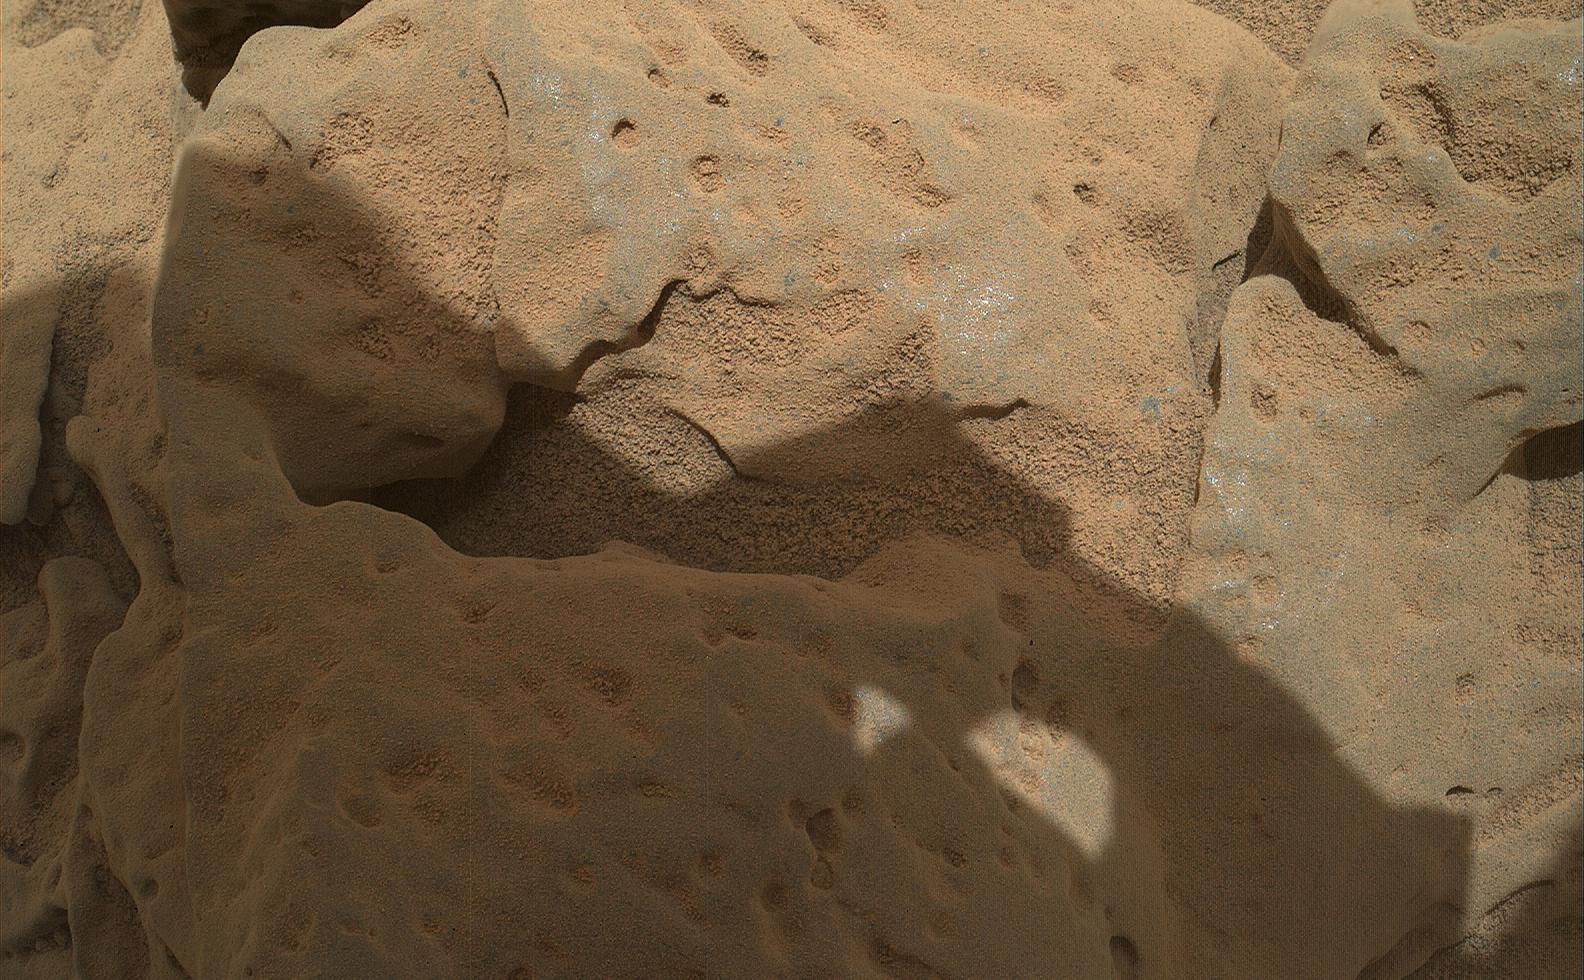 Rock 'Burwash' Near Curiosity, Sol 82